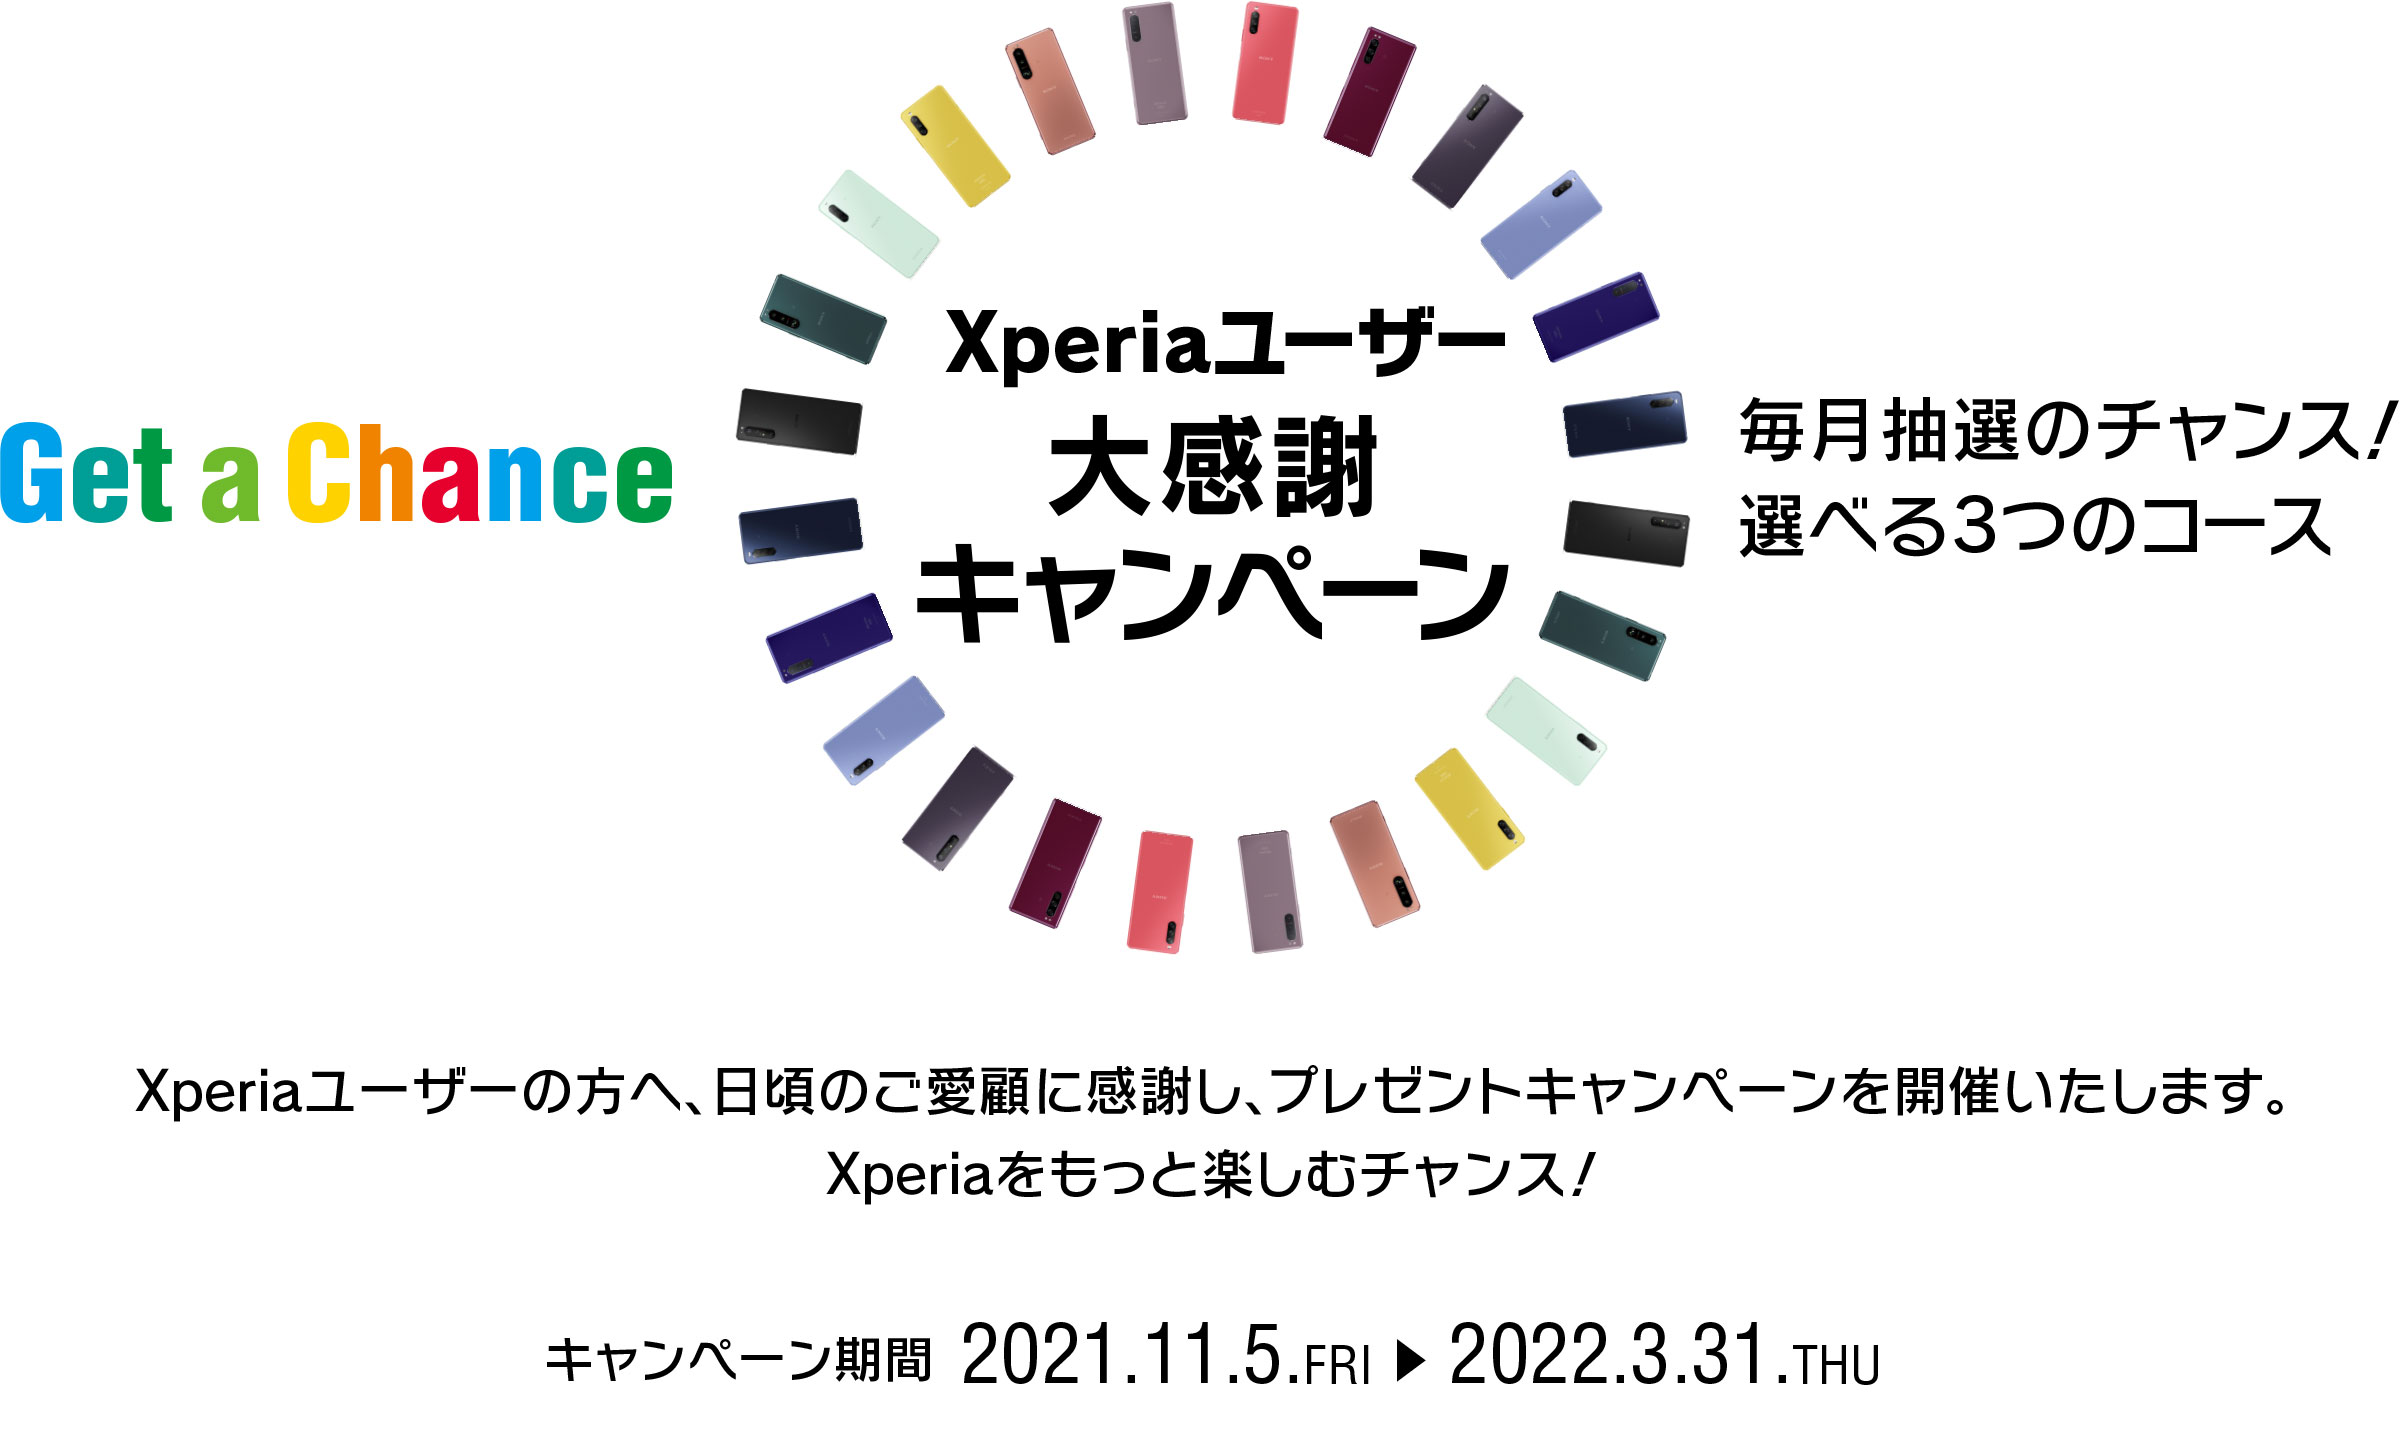 Xperiaユーザー大感謝キャンペーン Get a Chance 毎月抽選のチャンス！ 選べる3つのコース！ Xperiaユーザーの皆様へ、日頃のご愛顧に感謝し、さらにXperiaを楽しんでいただくためのプレゼントキャンペーンを実施いたします。 応募期間第１弾 2021.11.5.FRI → 2021.11.30.TUE 23:59 キャンペーン期間 2021.11.5.FRI → 2022.3.31.THU 2013年以降に発売されたXperia(TM)スマートフォン、Xperia(TM)タブレットが対象になります。